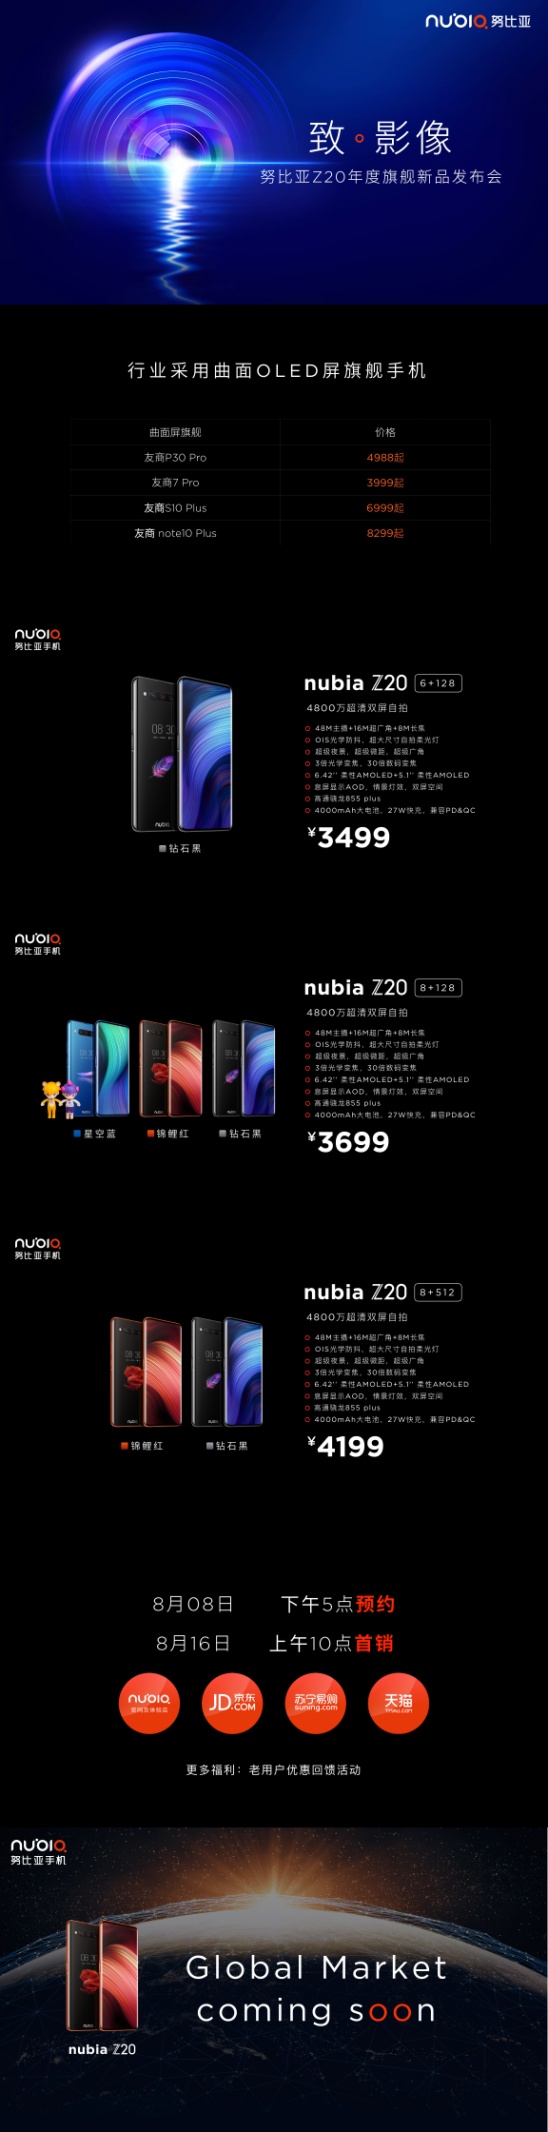 努比亚Z20影像旗舰发，诠释手机影像与设计美学新高度